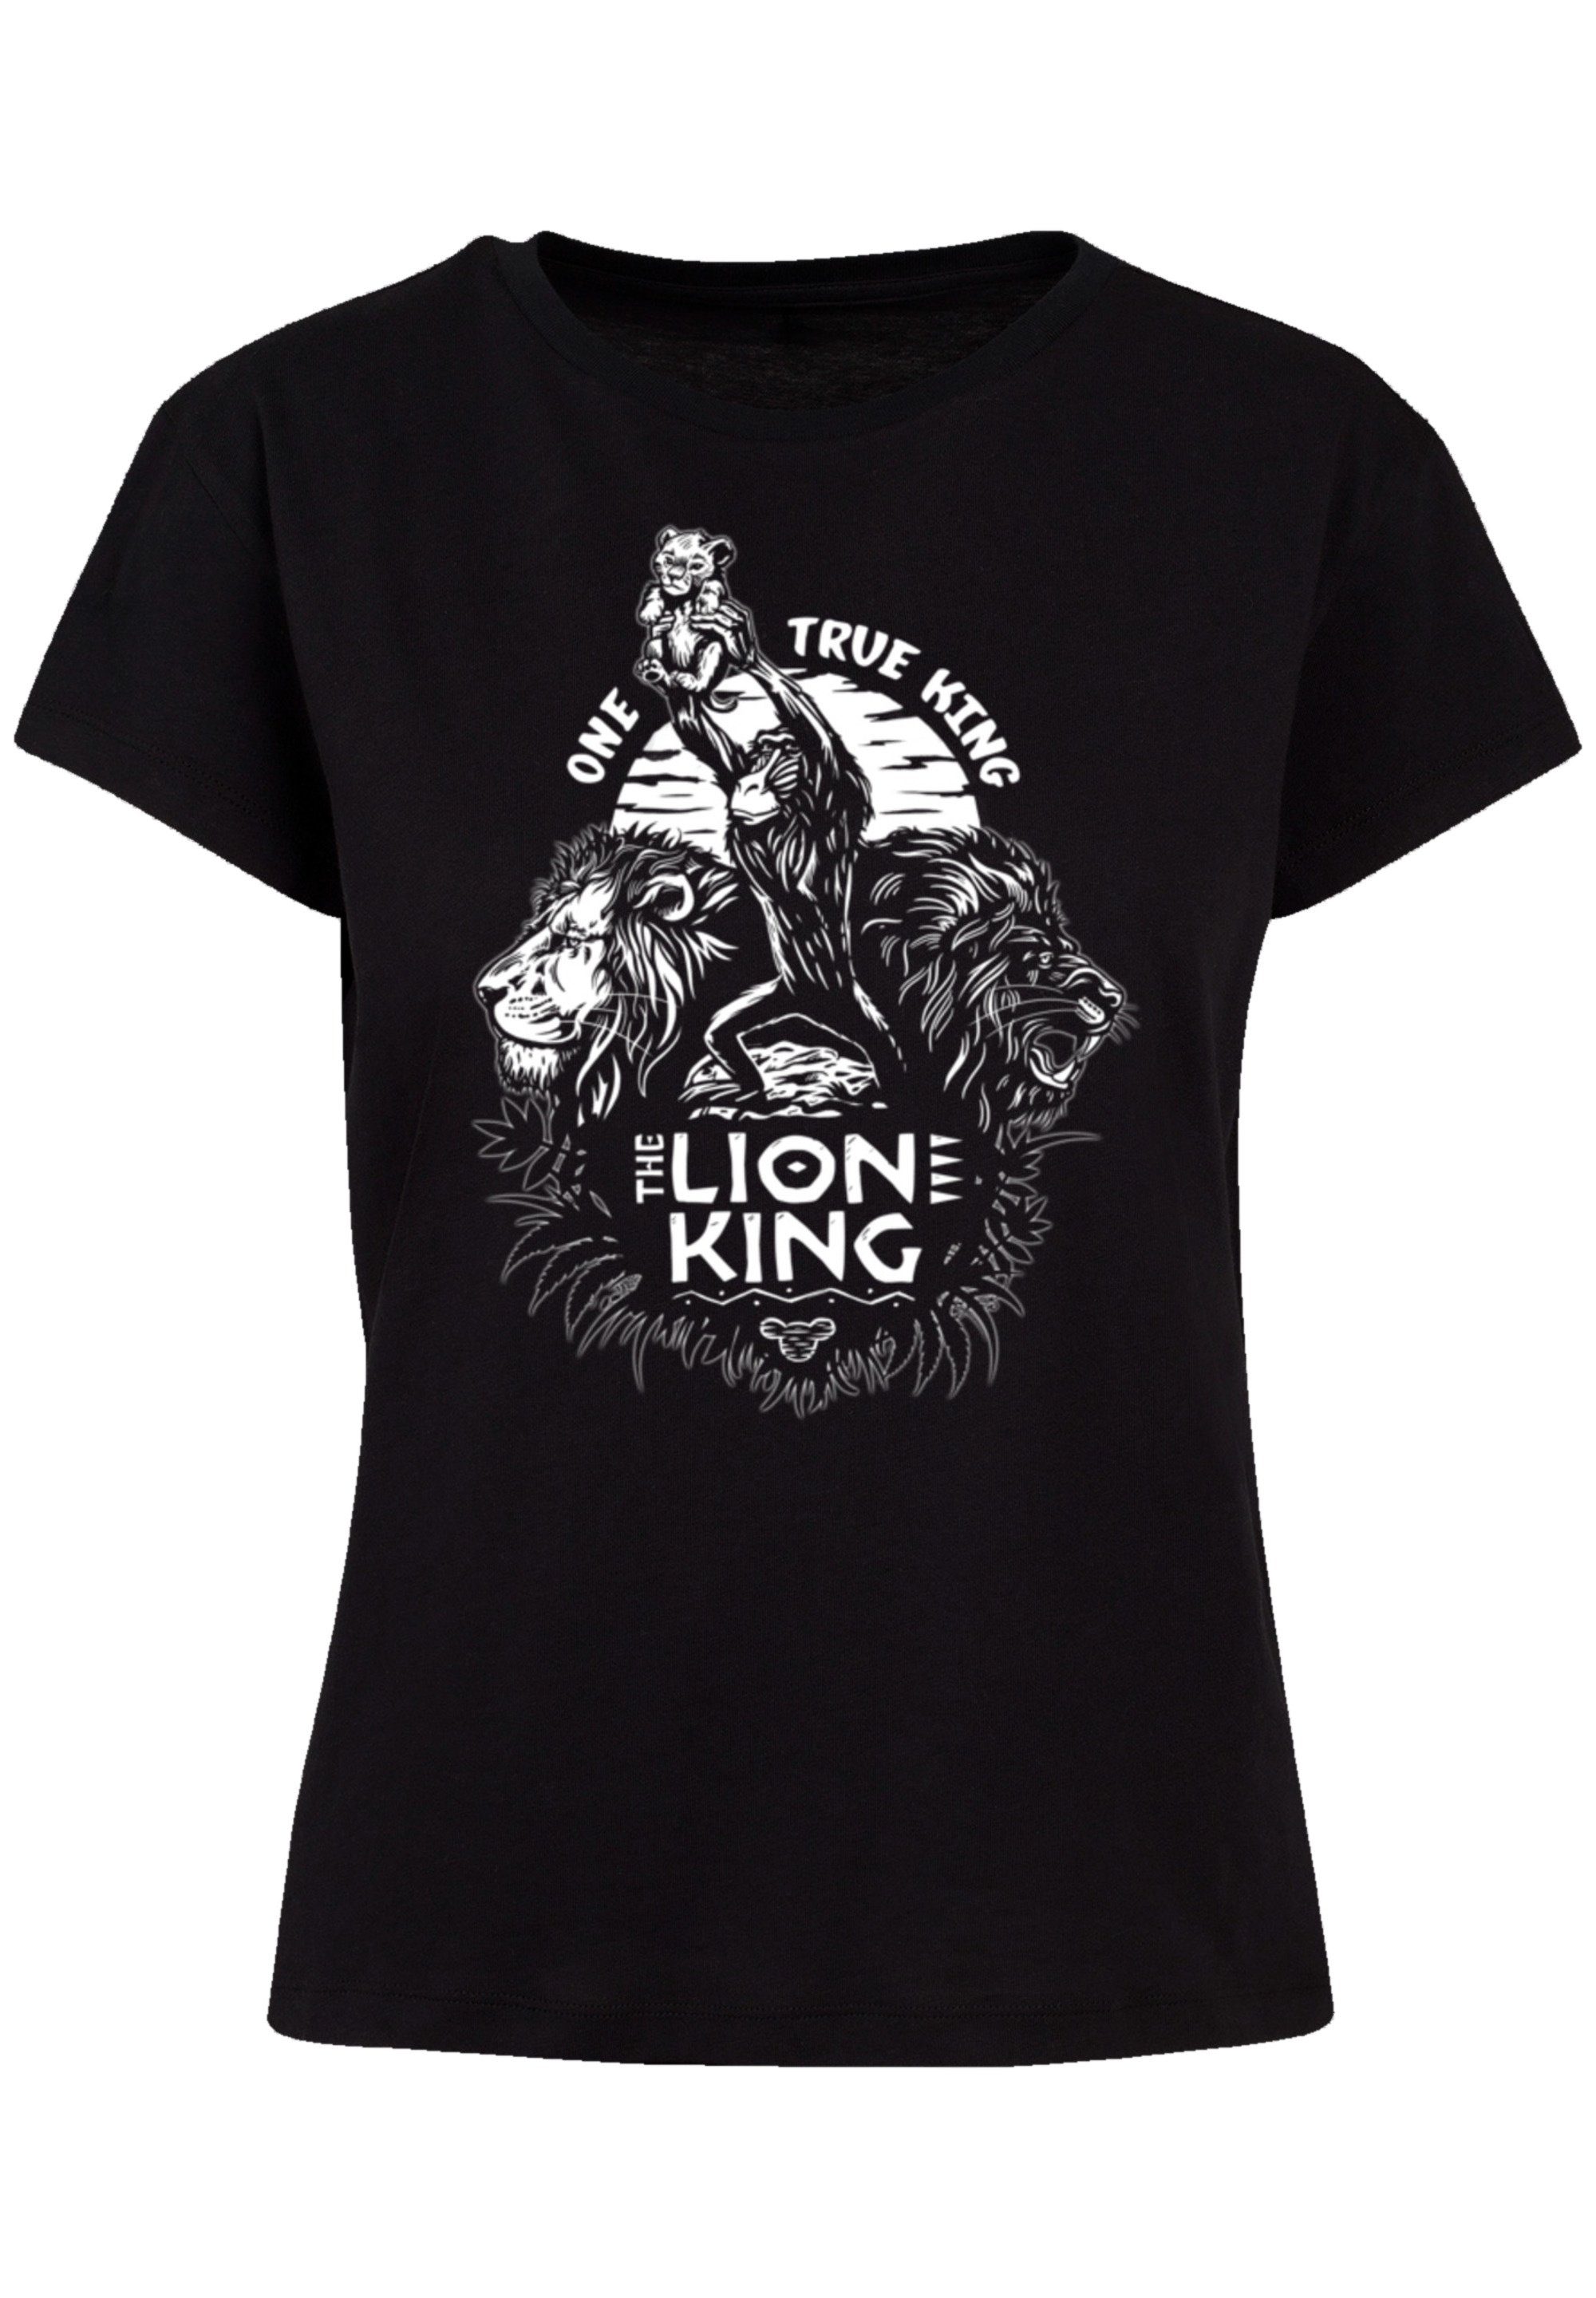 F4NT4STIC T-Shirt Disney König der Löwen One True King Premium Qualität,  Perfekte Passform und hochwertige Verarbeitung